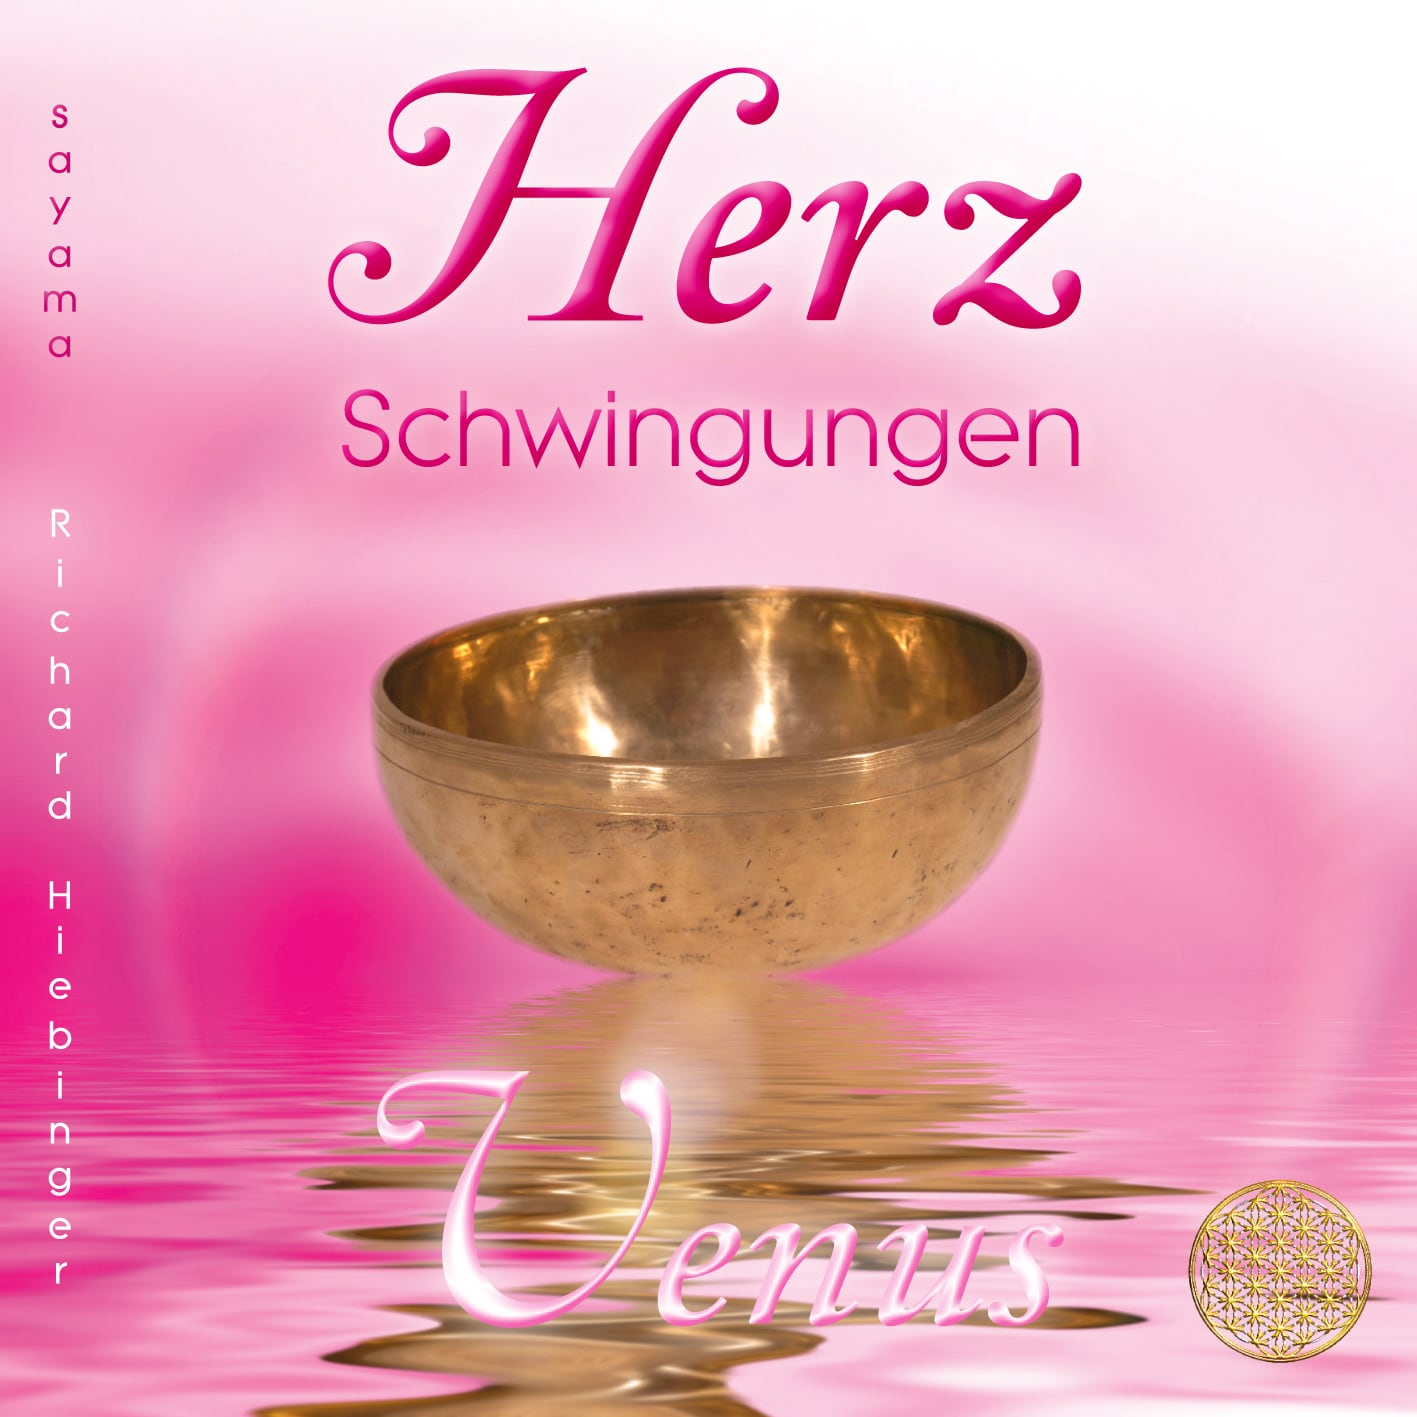 CD Titelbild Herzschwingungen Venus von Sayama Music Richard Hiebinger. https://www.sayama-music.de/cds/herzschwingungen-venus/